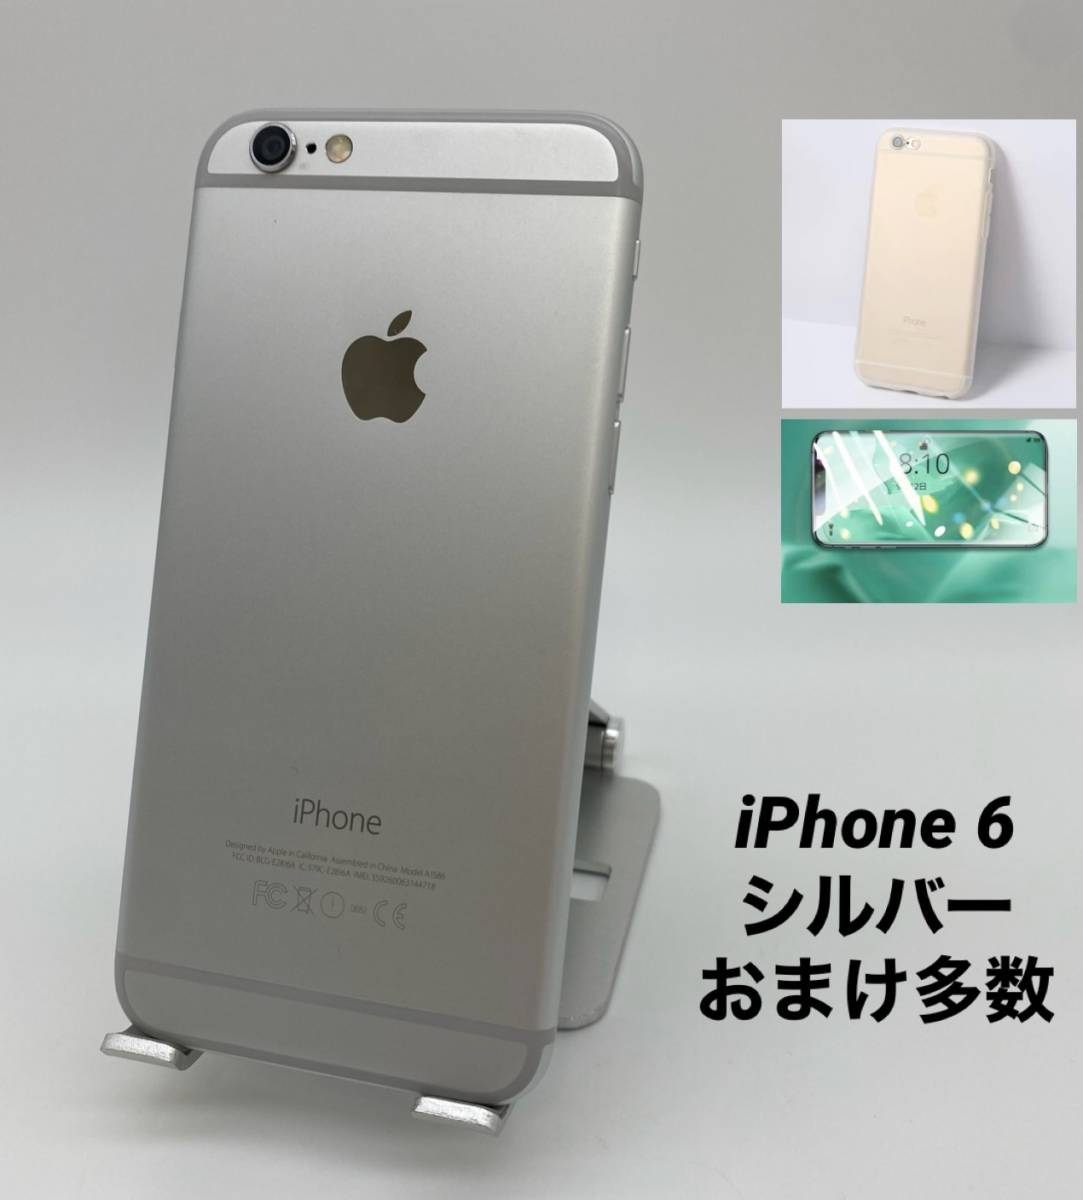 お買い得HOT iPhone Silver 64GB docomo BT100% F91n3-m19213743051 